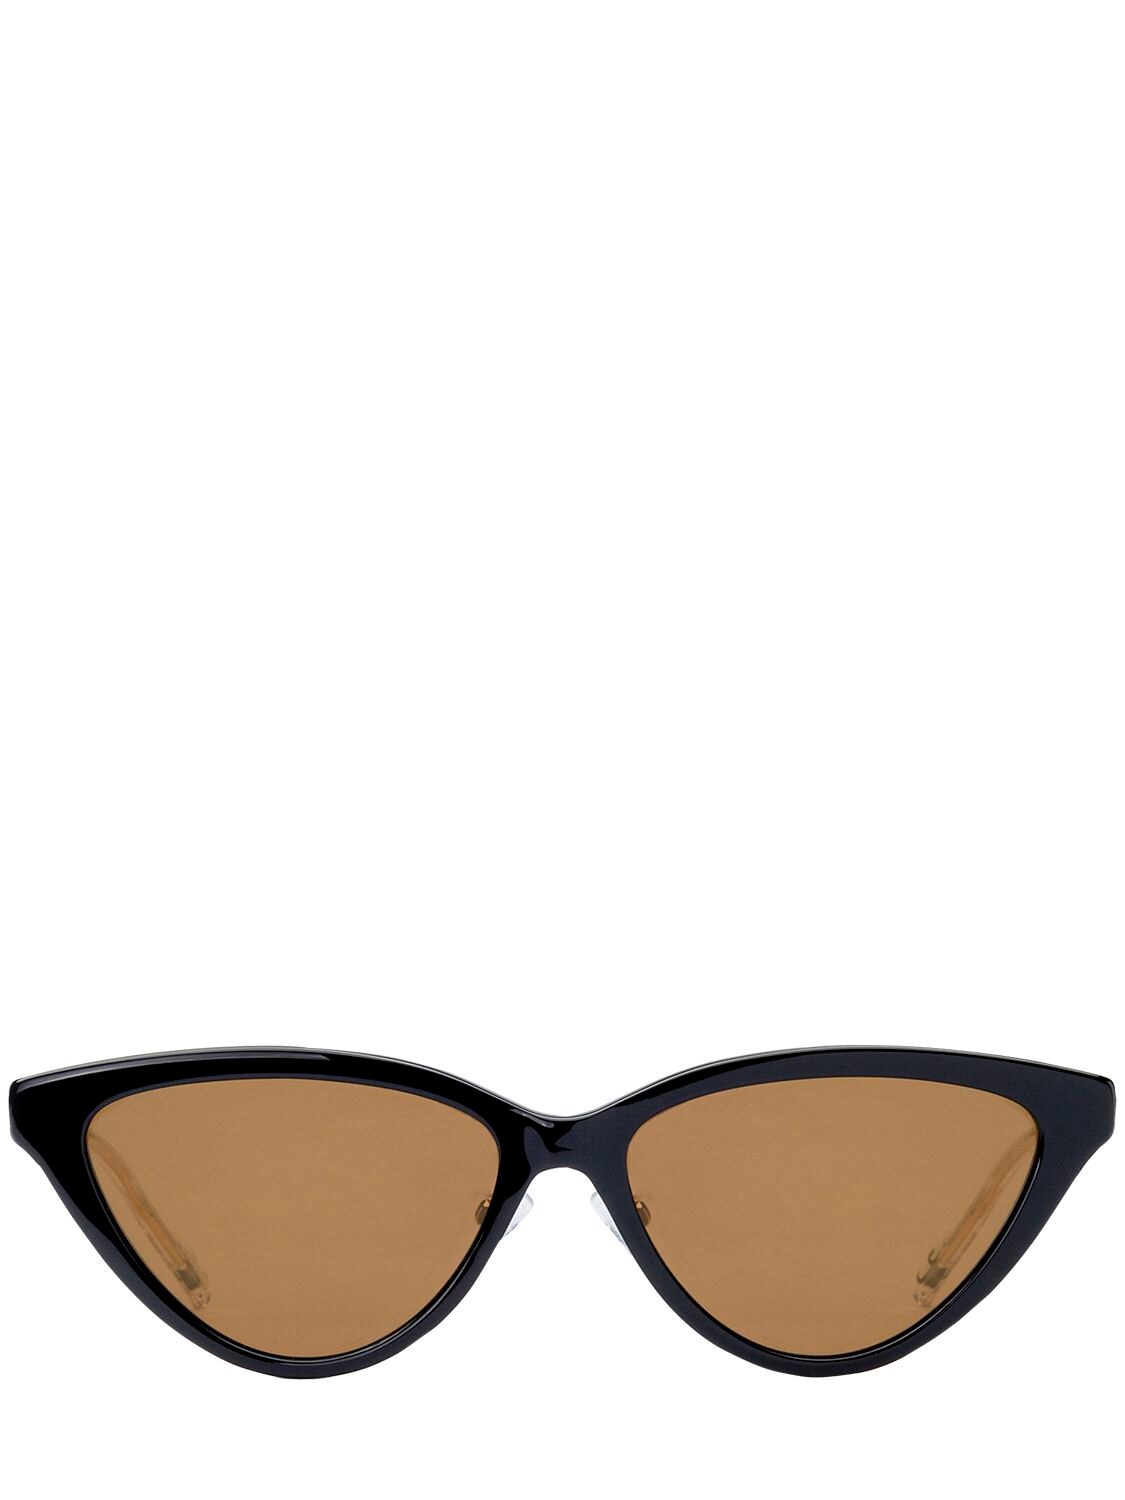 Adidas Originals By Italia Independent Acetate Cat-eye Sunglasses In Black/gold